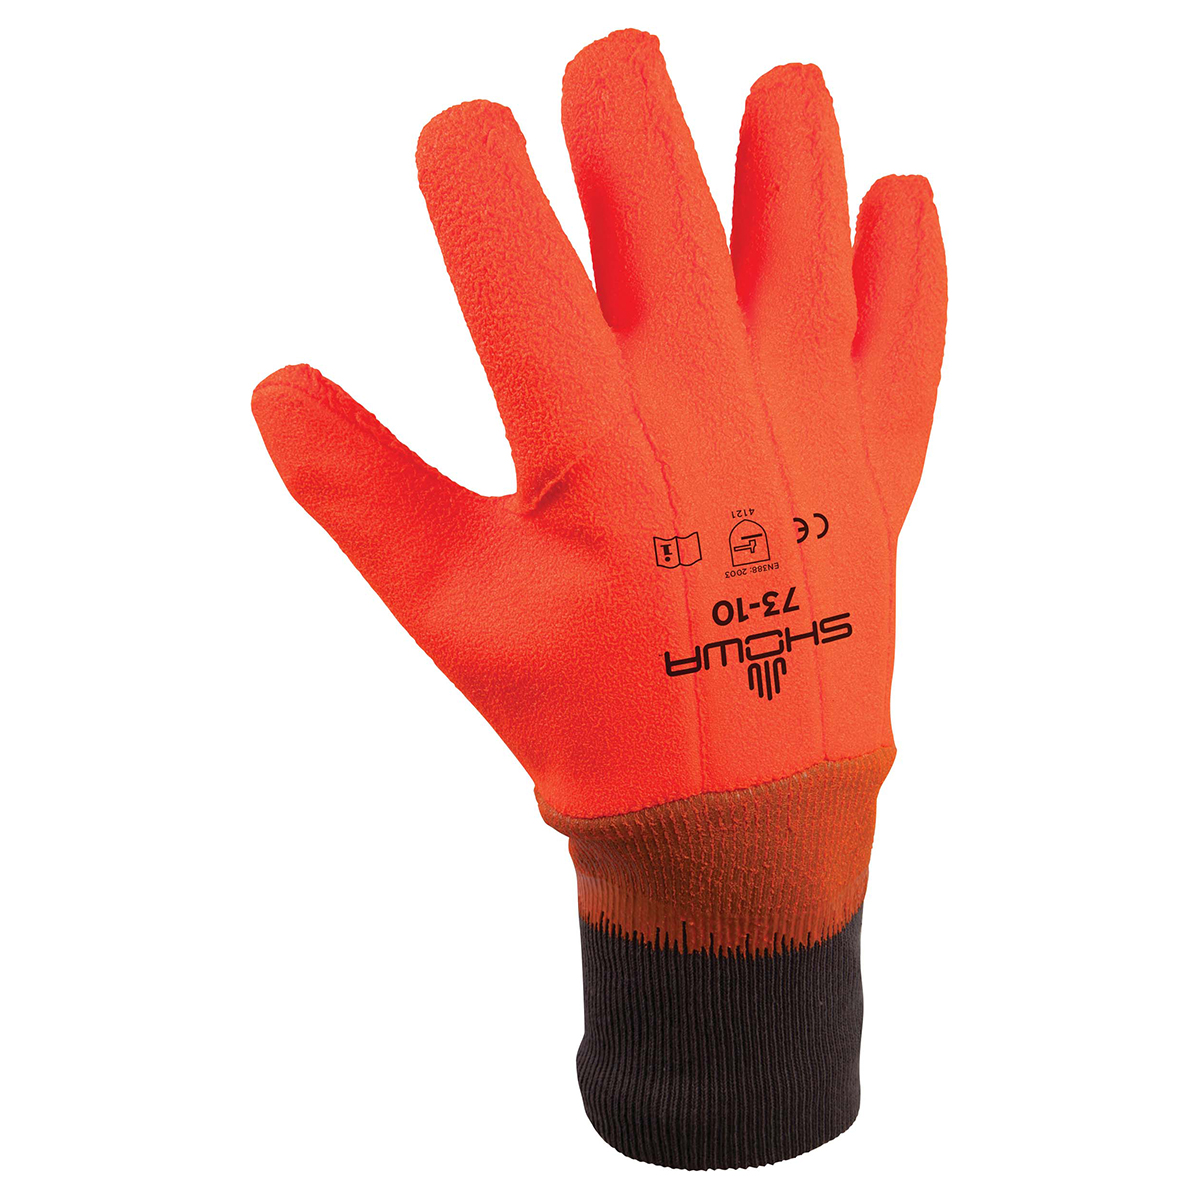 Insulated PVC fully coated vinyl, knit wrist, wrinkle finish, safety orange, large